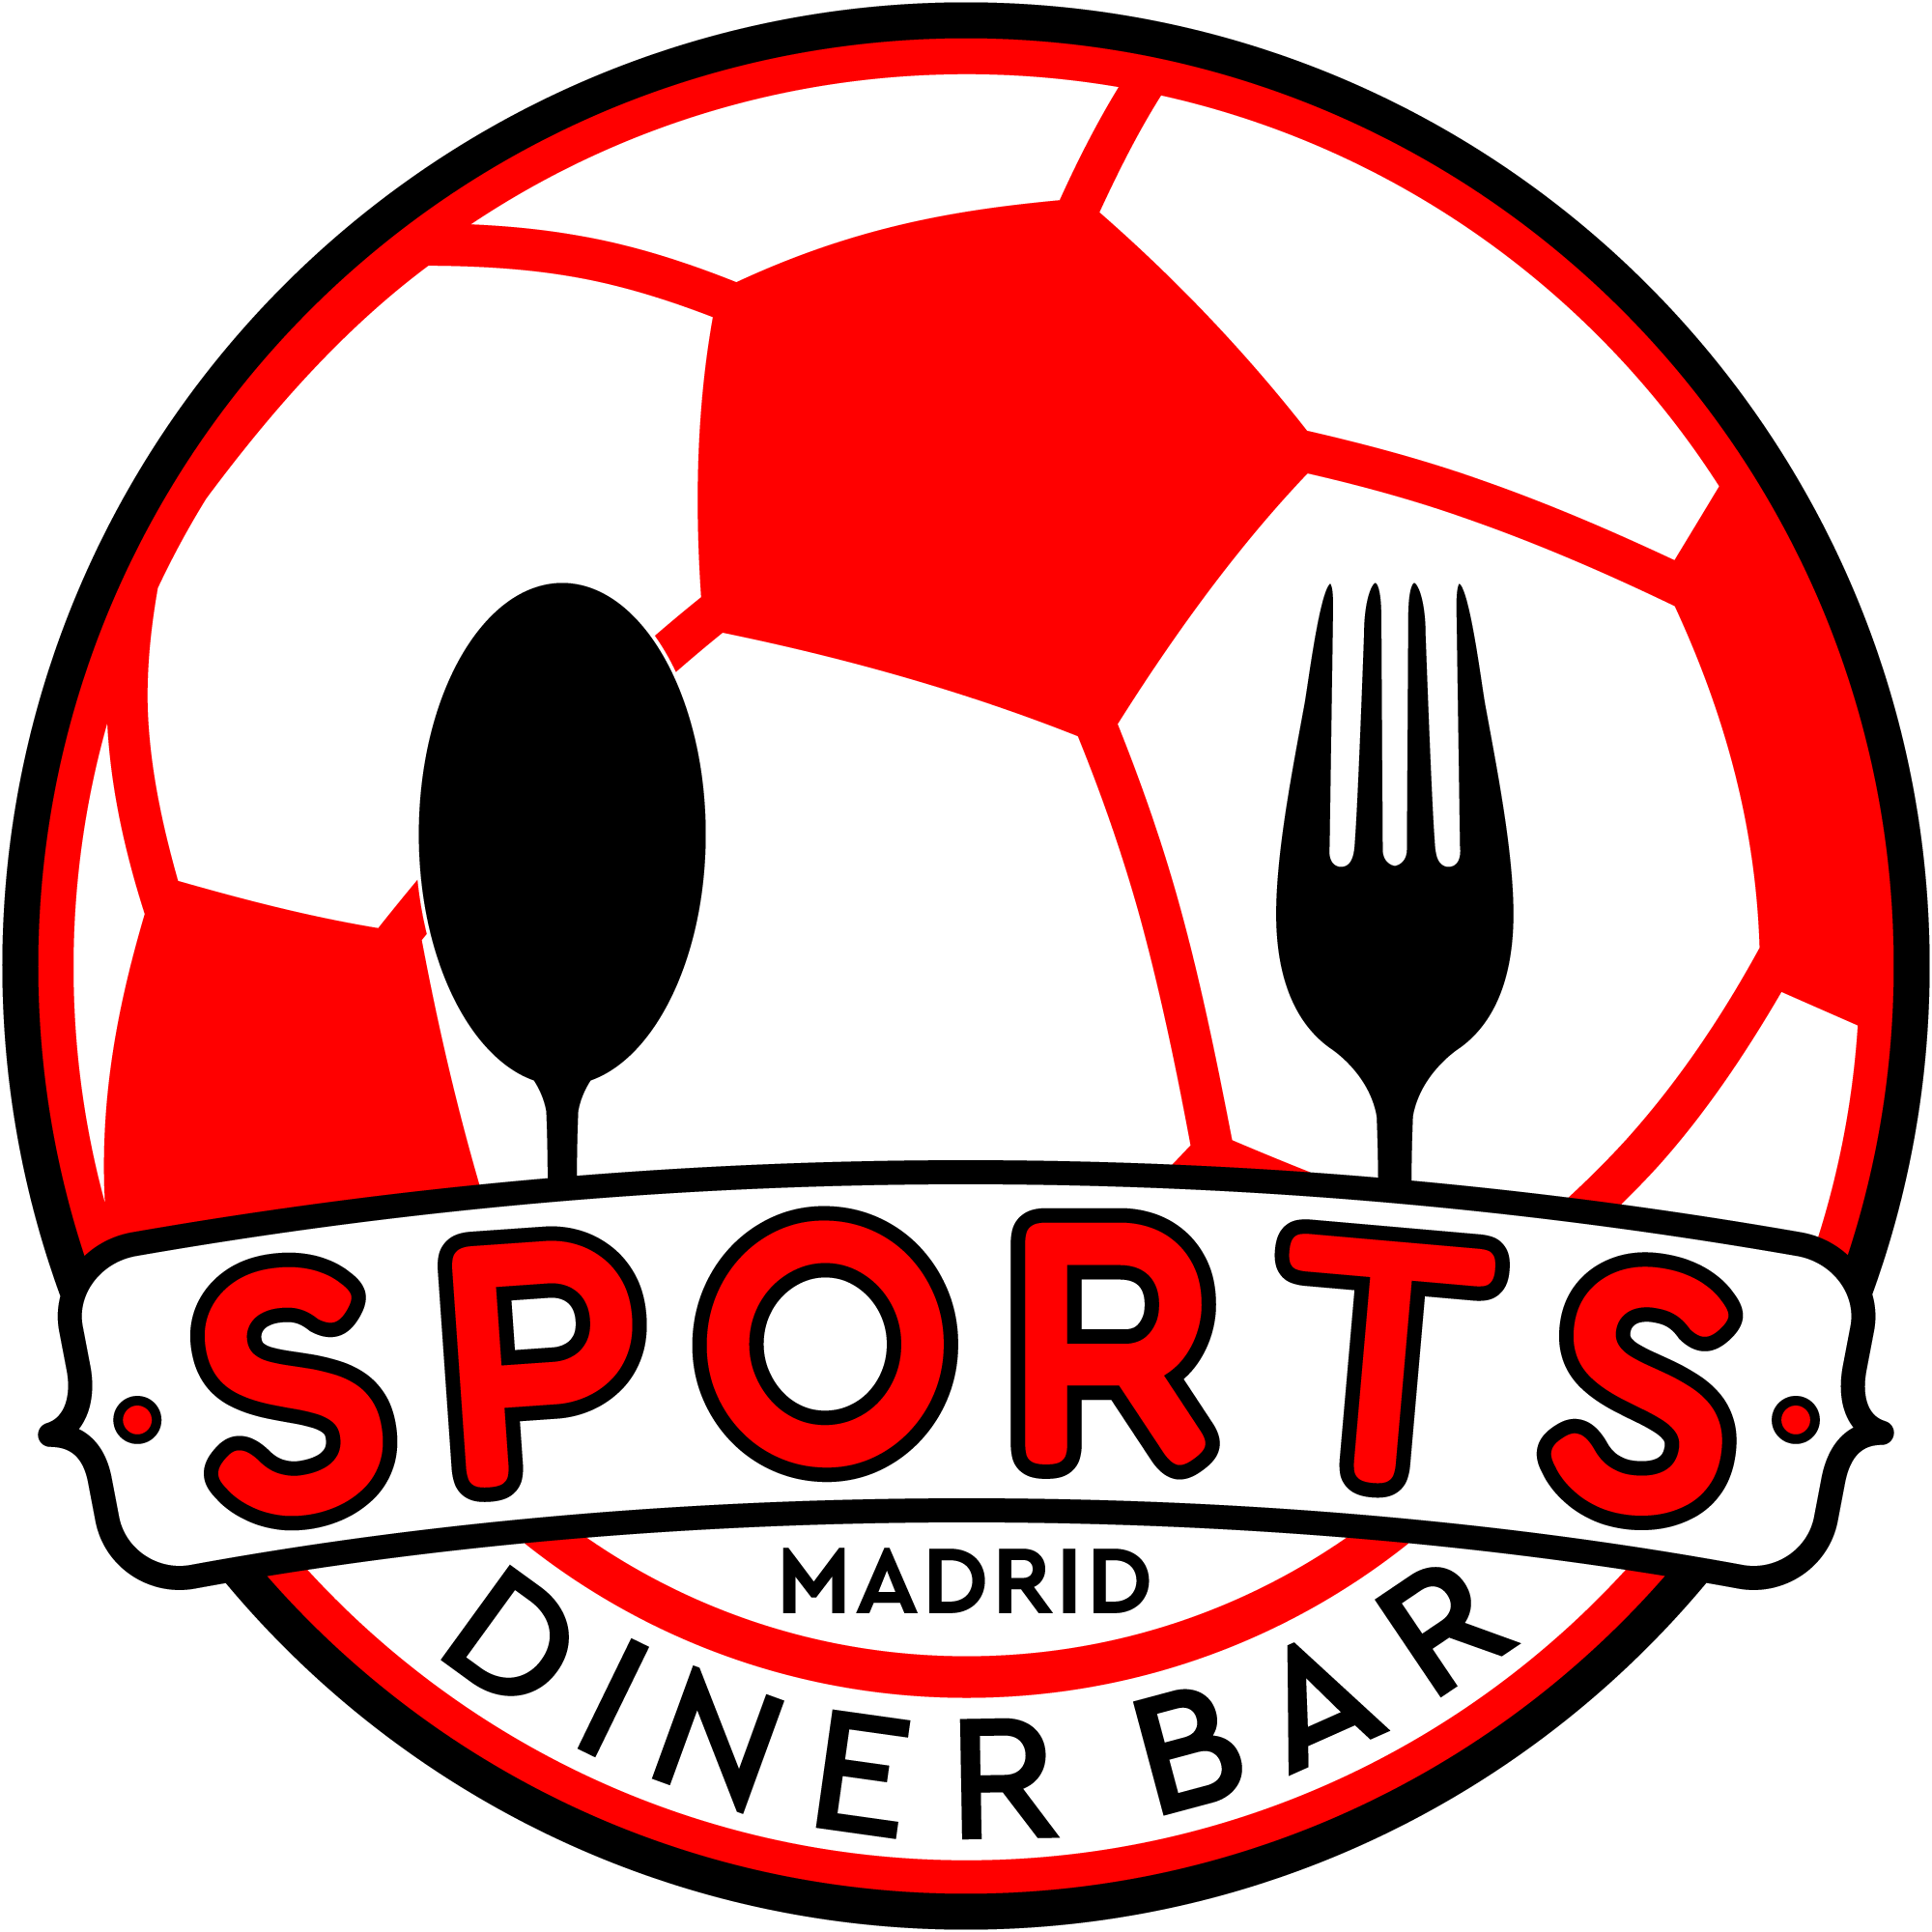 Sports & Diner Bar